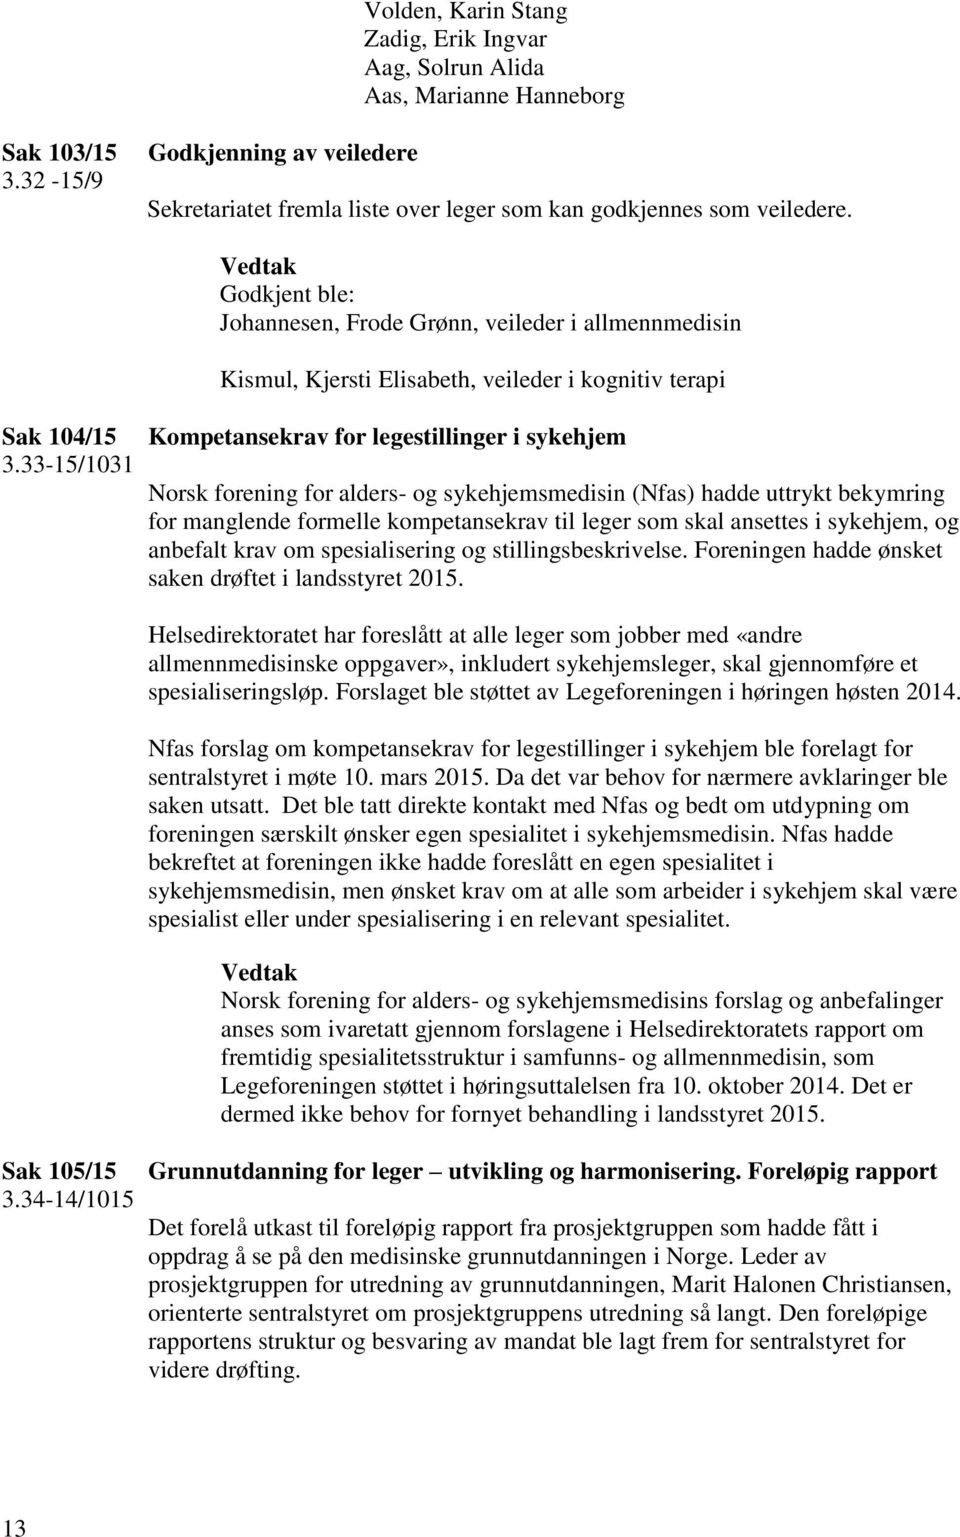 33-15/1031 Kompetansekrav for legestillinger i sykehjem Norsk forening for alders- og sykehjemsmedisin (Nfas) hadde uttrykt bekymring for manglende formelle kompetansekrav til leger som skal ansettes